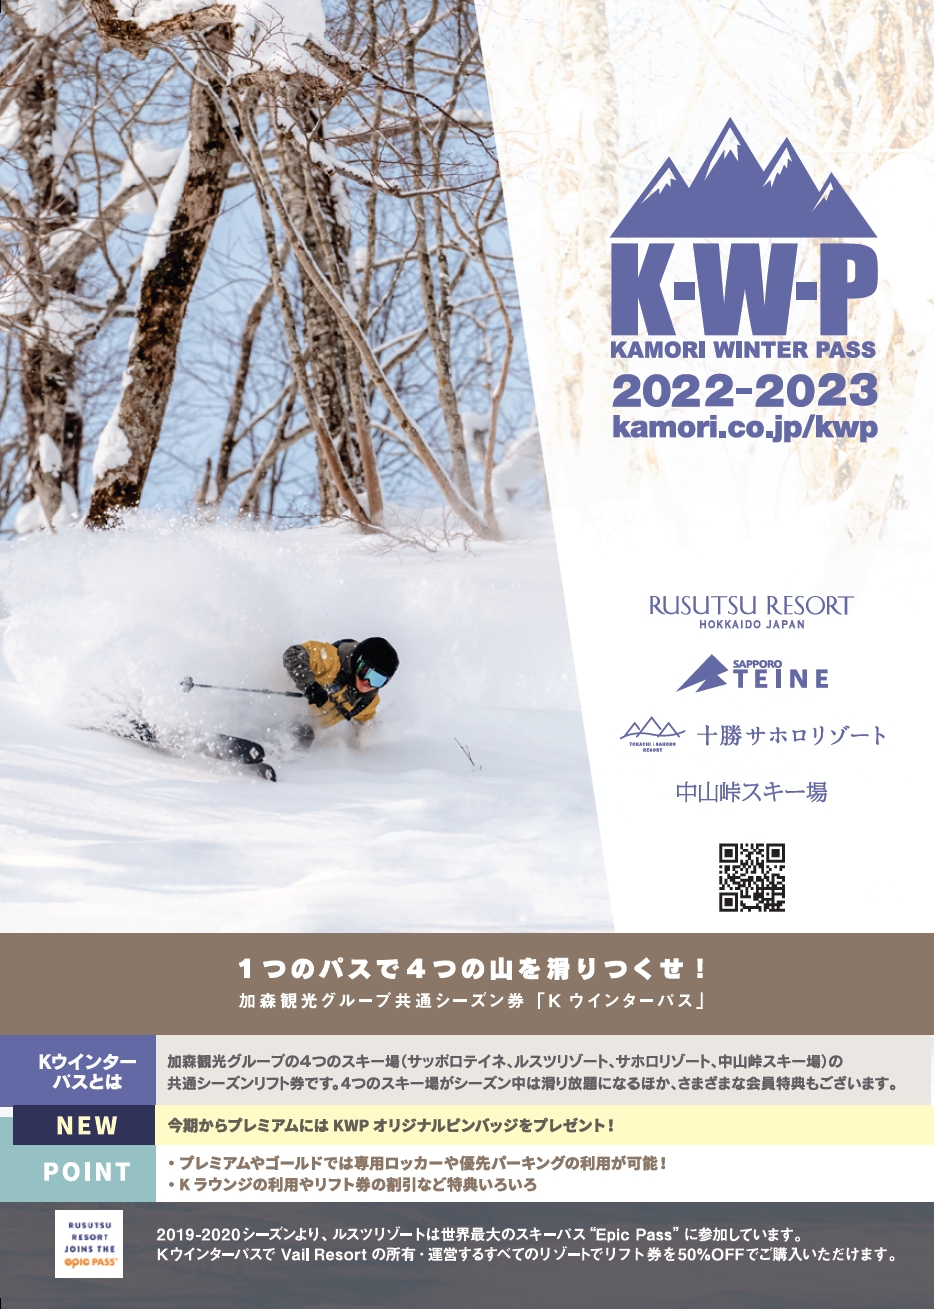 『2年保証』施設利用券加森観光グループ共通シーズン券『KWP 2022-2023』好評販売中